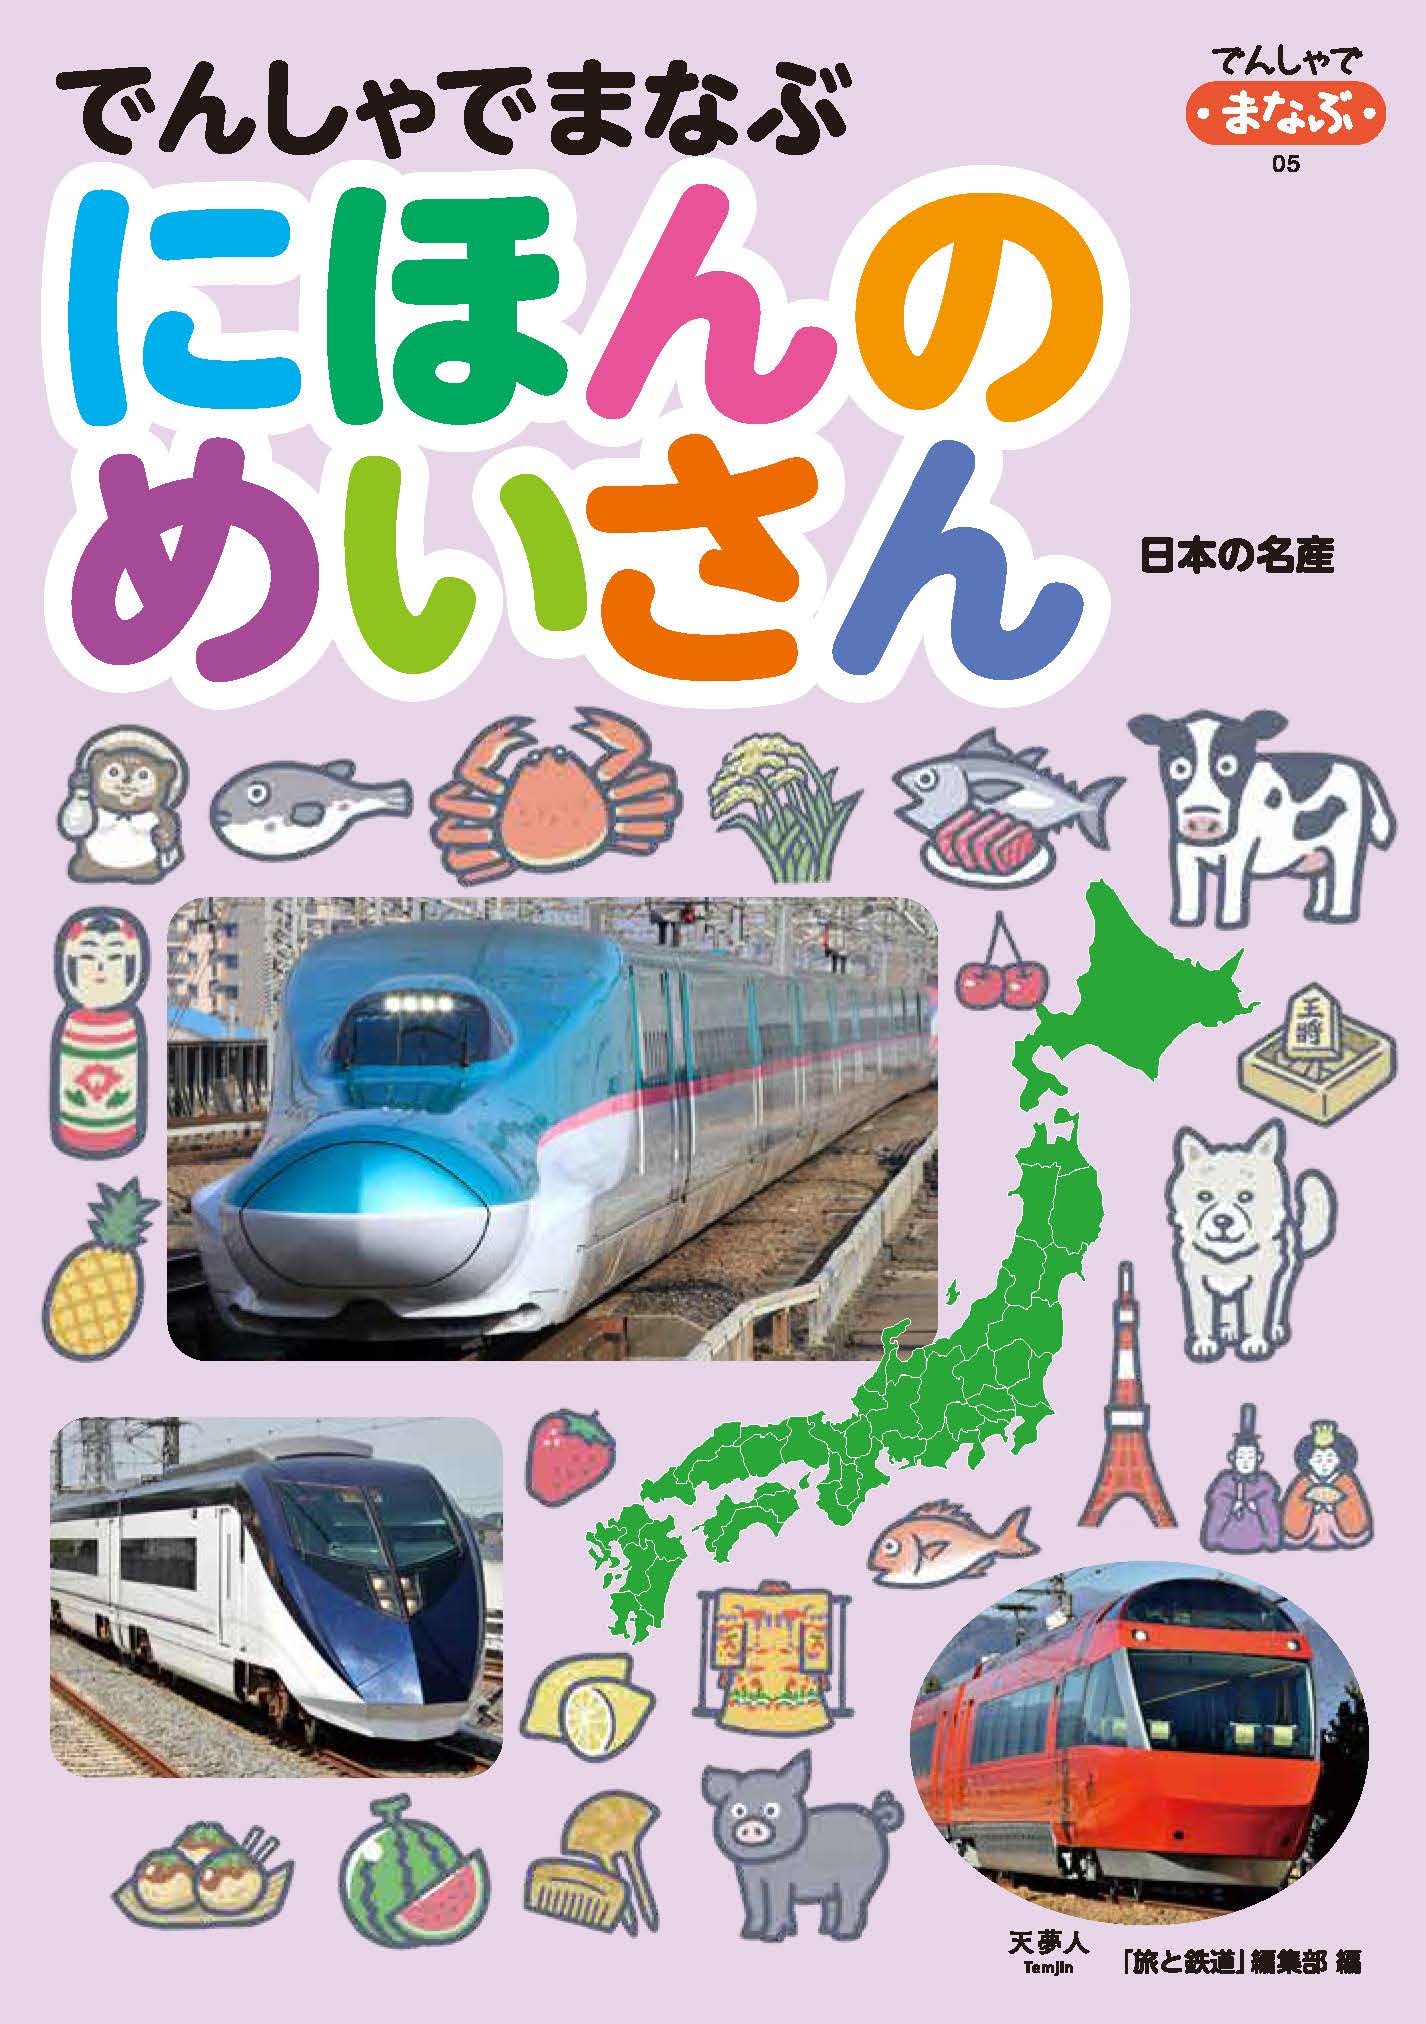 電車の写真とイラストで楽しく47都道府県の名産を覚えられる 鉄道が好きな小さいお子さんにおすすめ でんしゃでまなぶ にほんのめいさん 刊行 株式会社インプレスホールディングスのプレスリリース